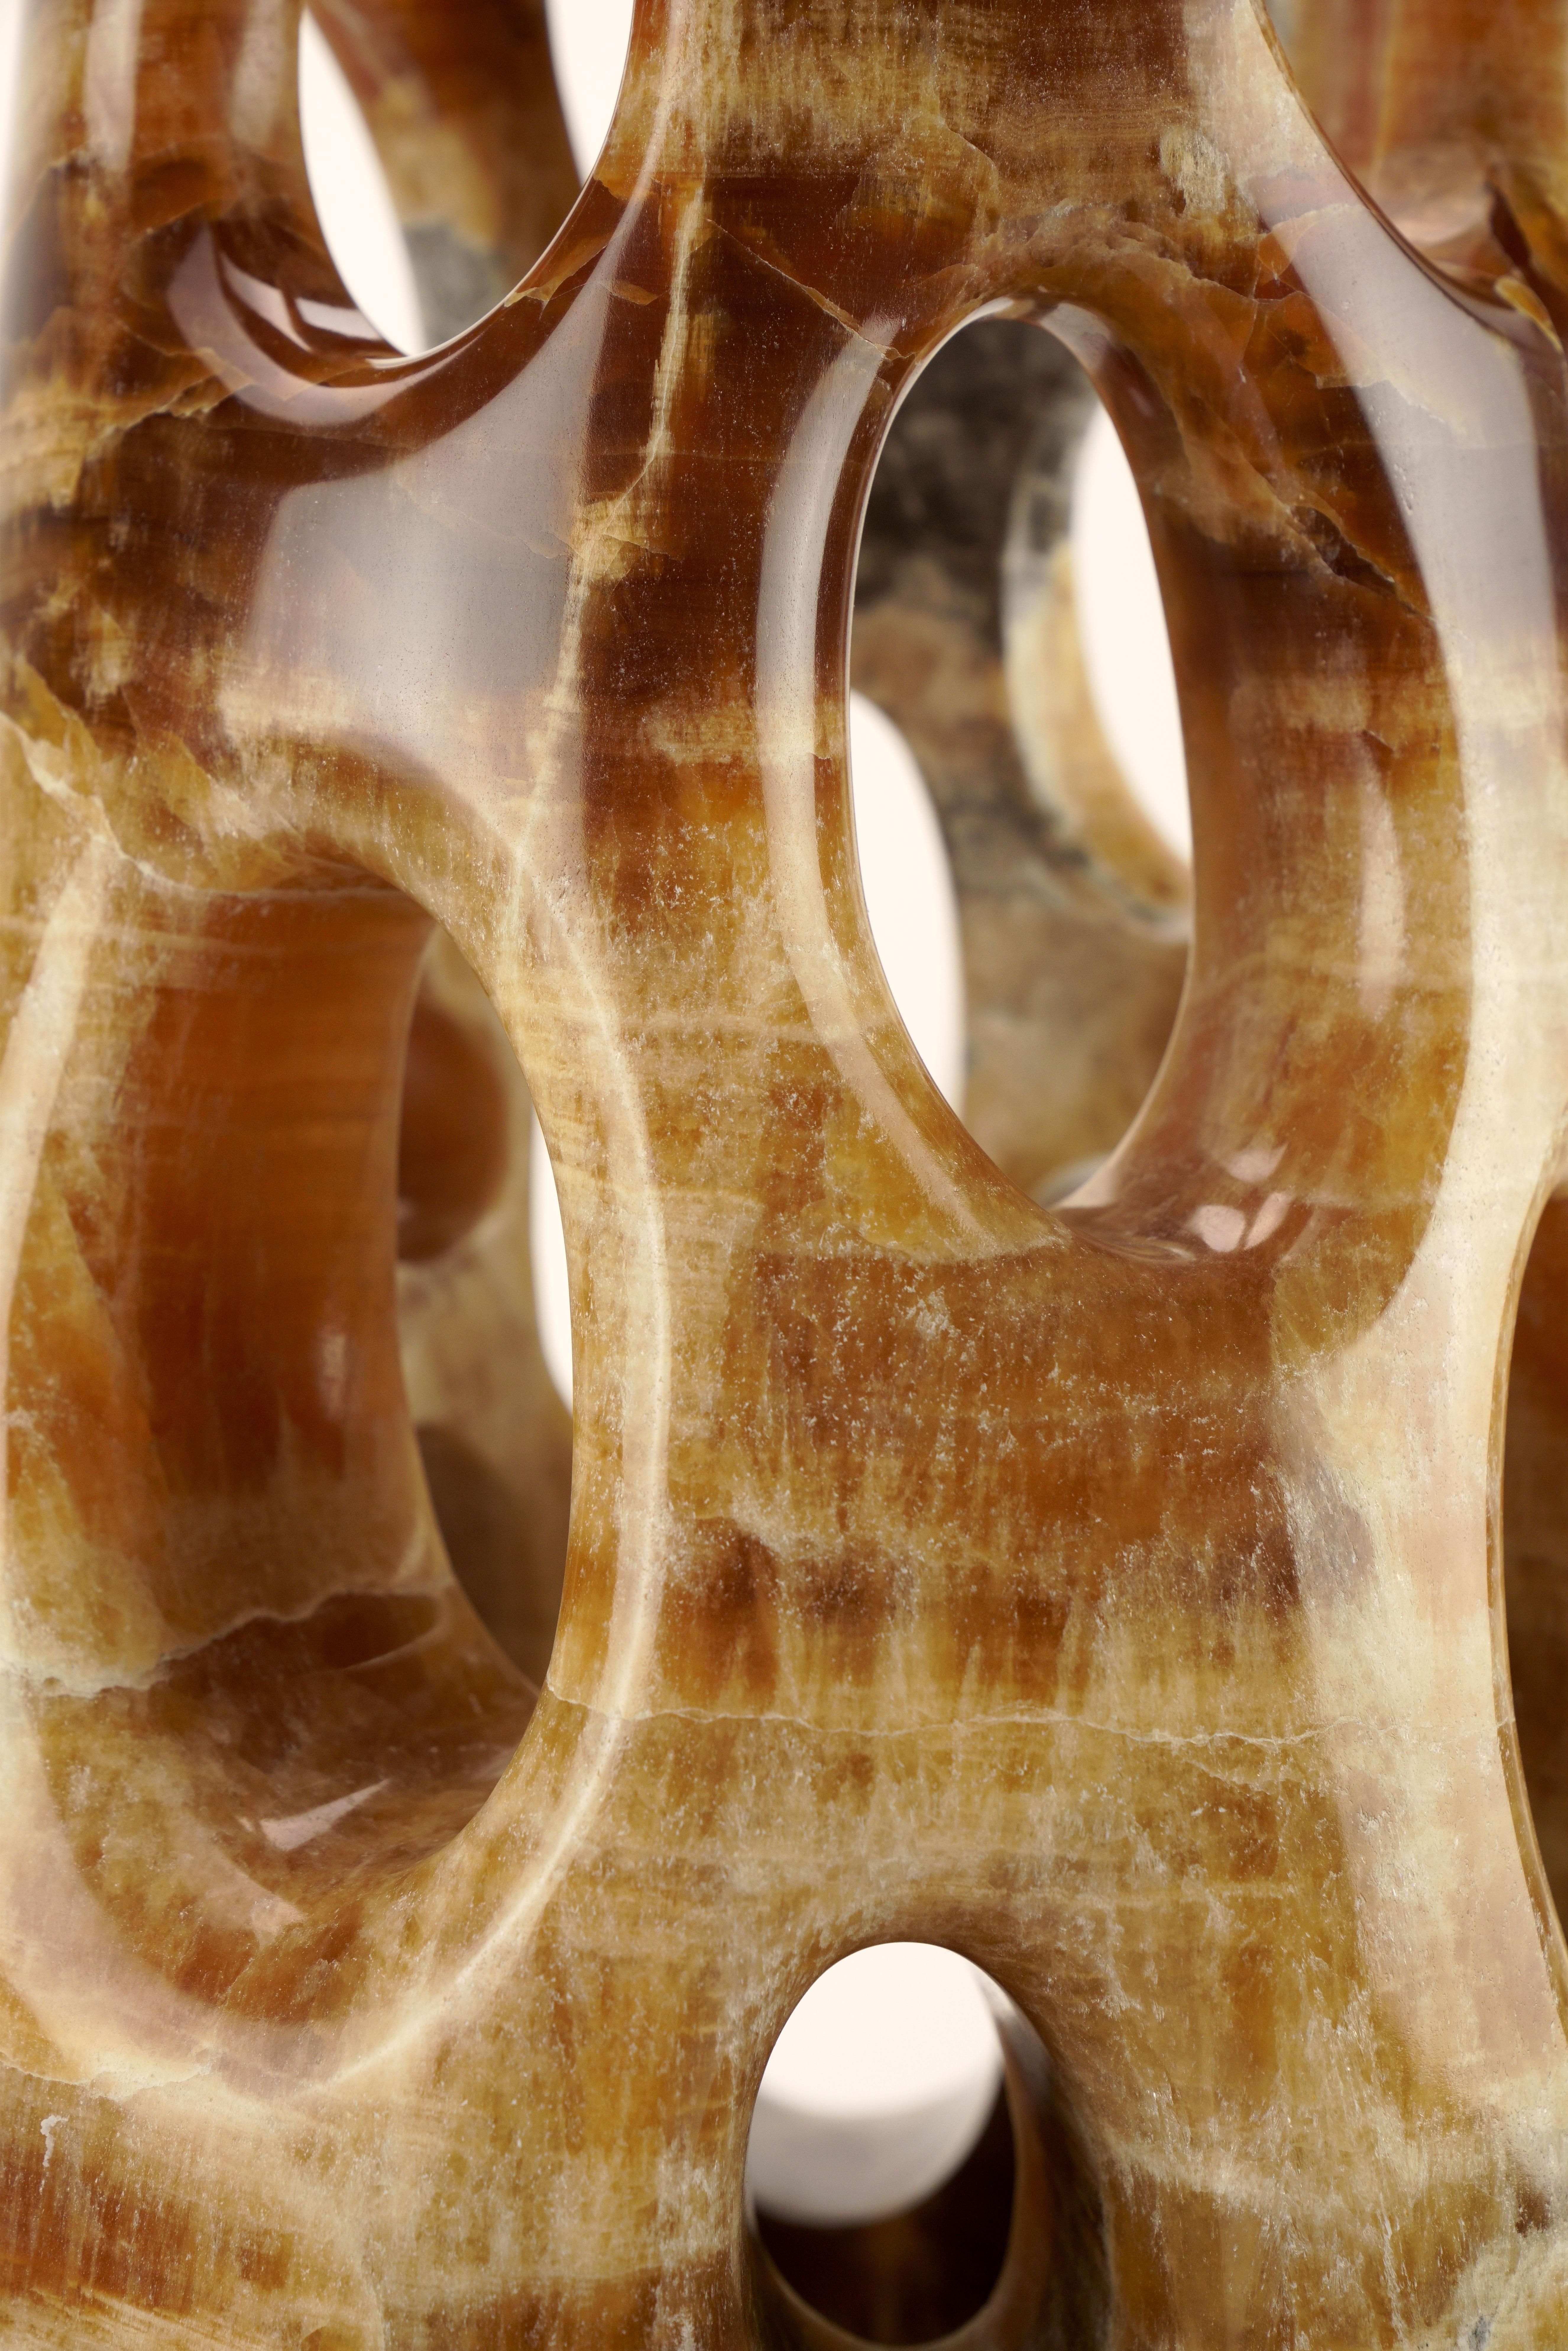 Bedeutende skulpturale Vase, die von Hand aus einem massiven Block aus Bernstein Onyx geschnitzt wurde. 

Abmessungen der Vase: D 30 x H 67 cm.

Erhältlich in verschiedenen Marmorsorten, Onyx und Quarzit.

Limitierte Auflage von 35 Stück.

Jede Vase